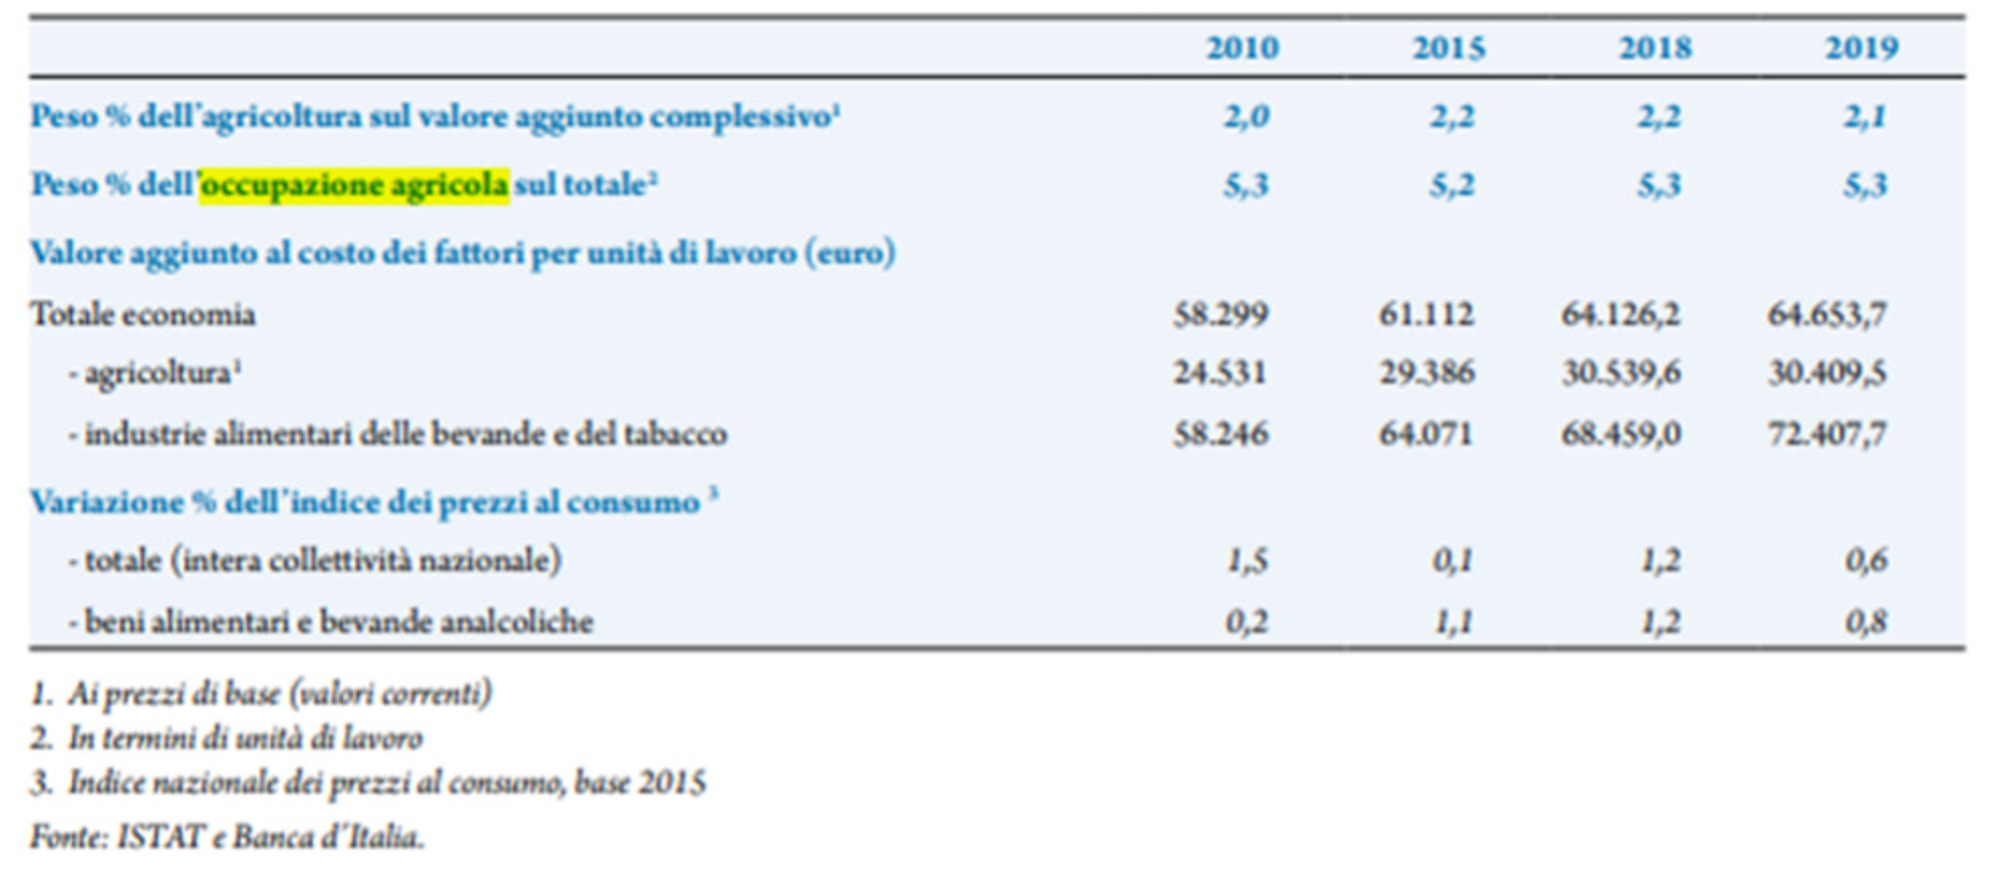 Tabella valore agricoltura nel sistema economico italiano